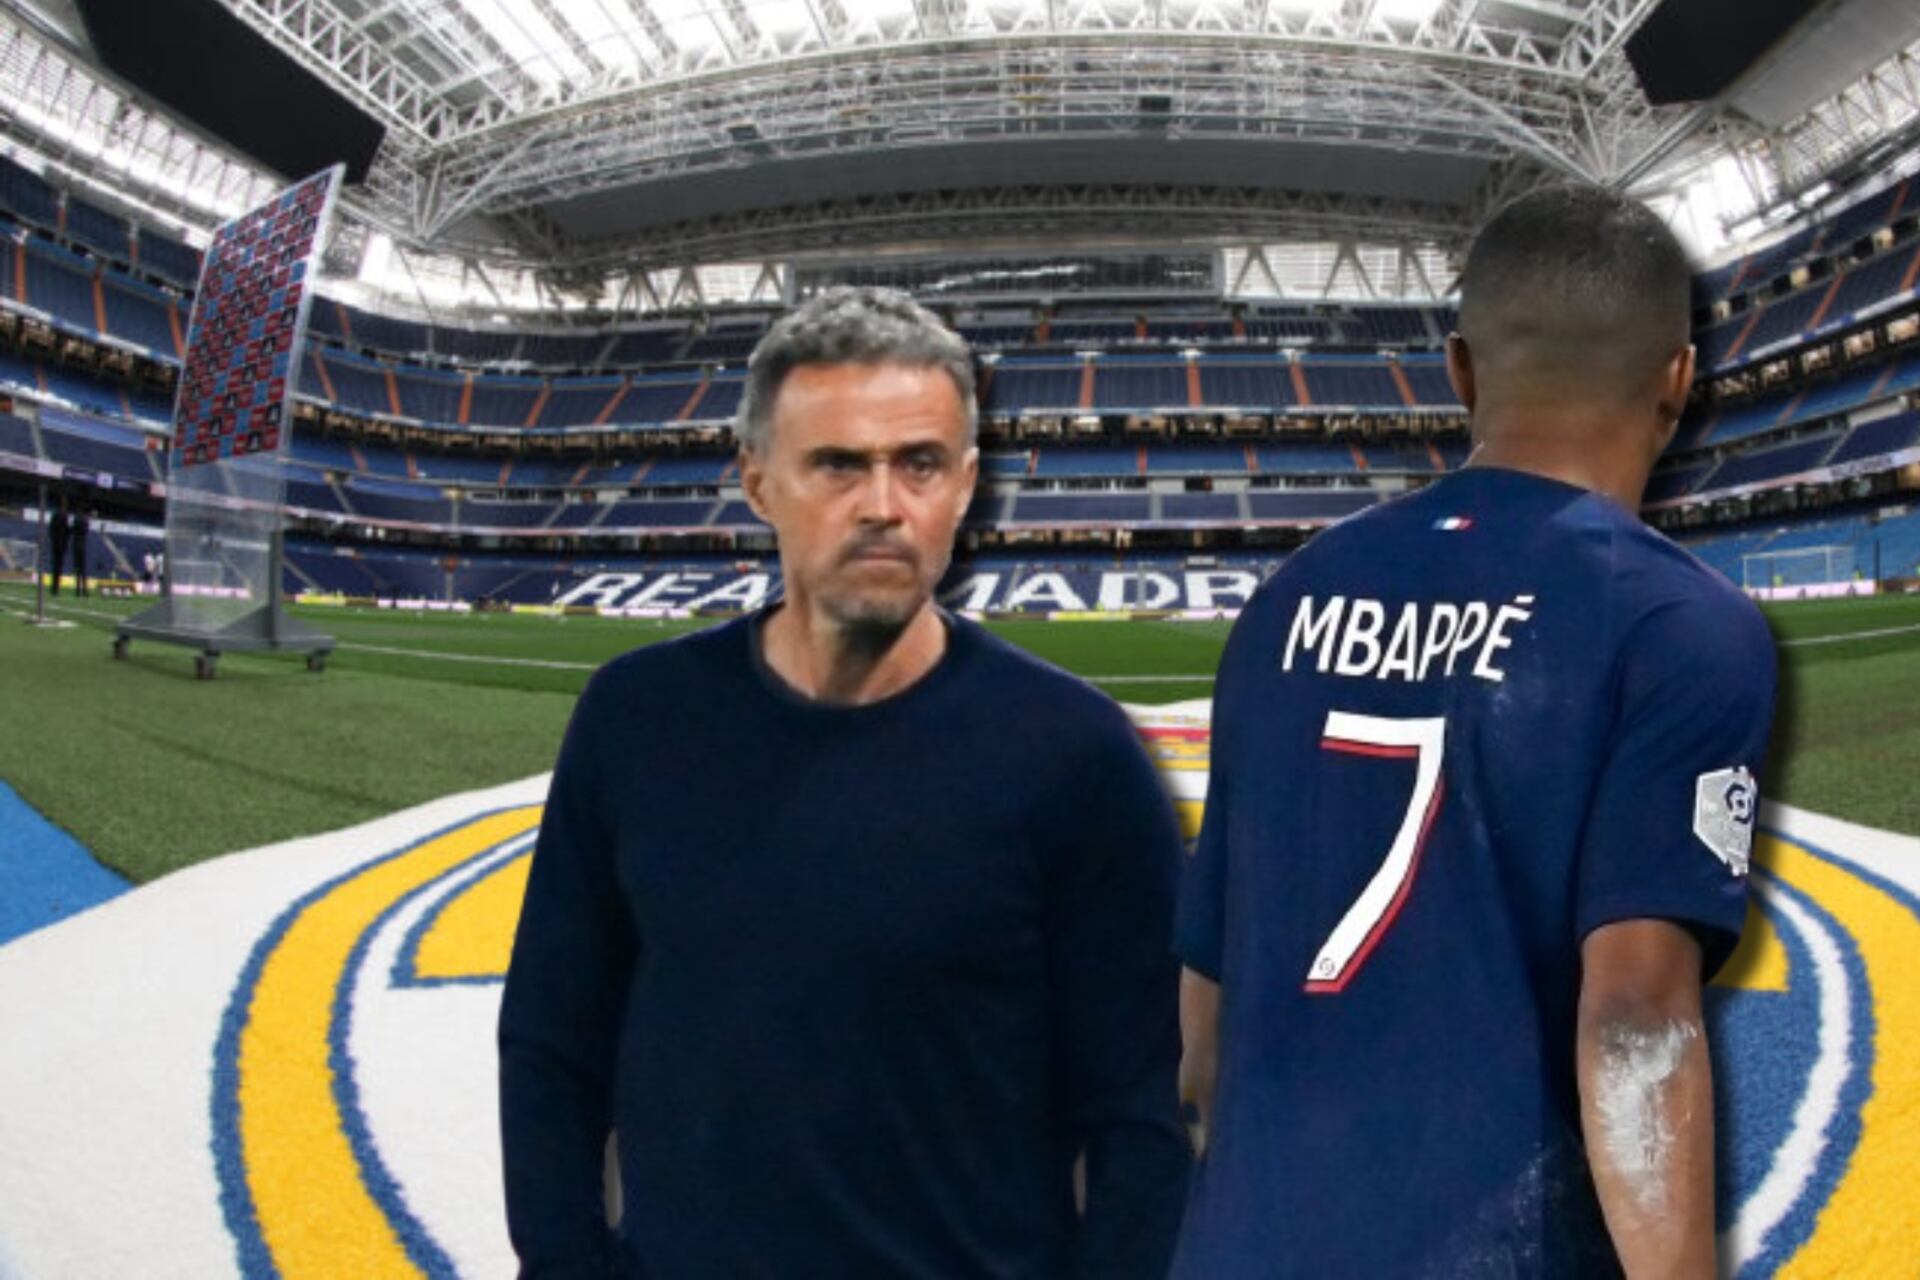 (VIDEO) Le dijeron que Mbappé se va al Madrid y mira cómo reaccionó Luis Enrique